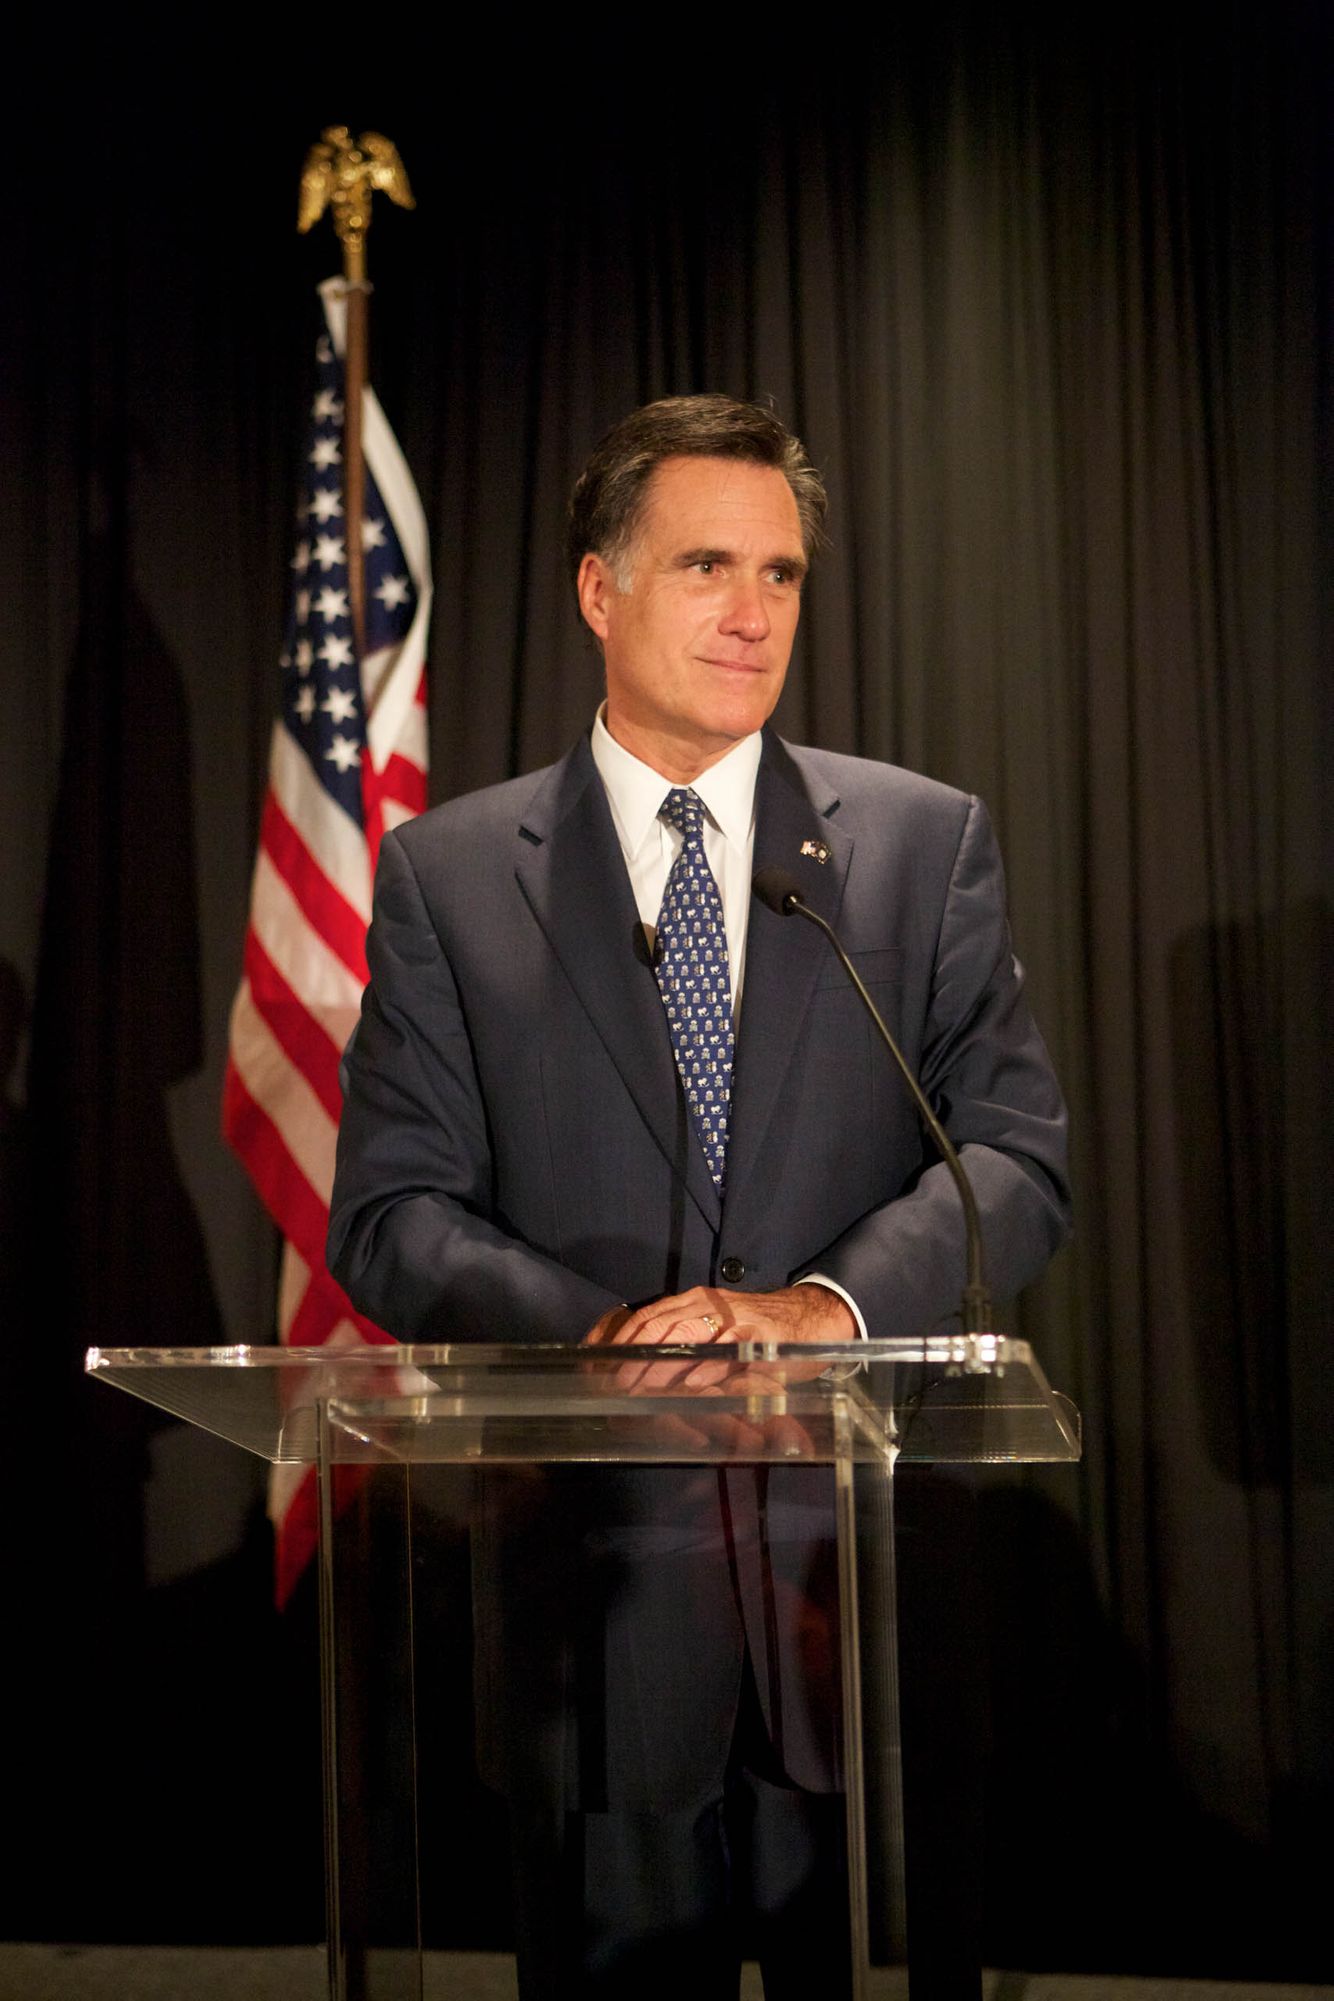 Mitt Romney By Chicago Celebrity Entertainment Event Photographer Jeff Schear.jpg